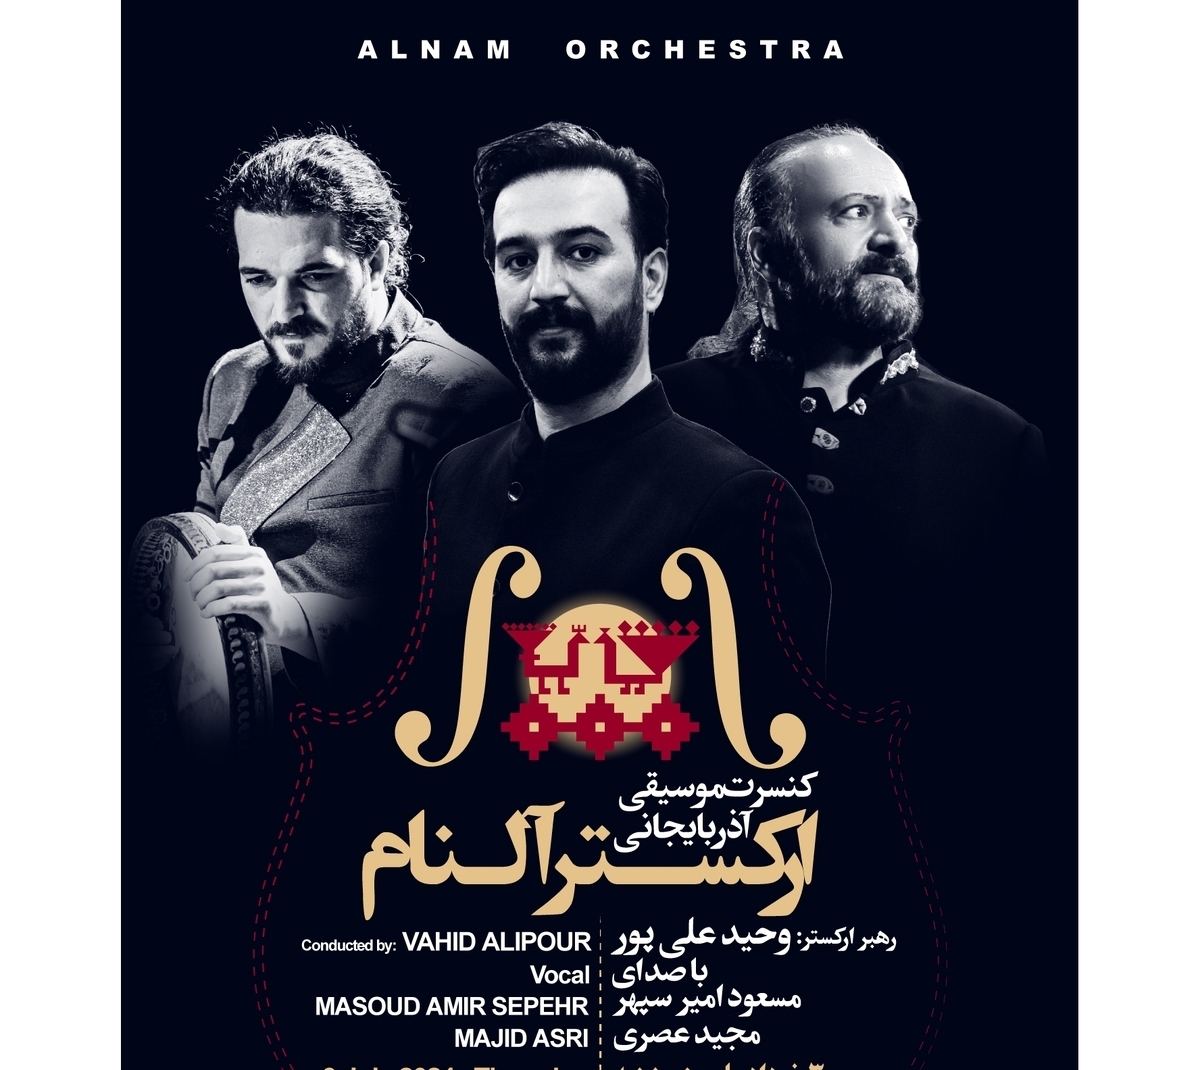 کنسرت موسیقی آذربایجانی النام برگزار می شود